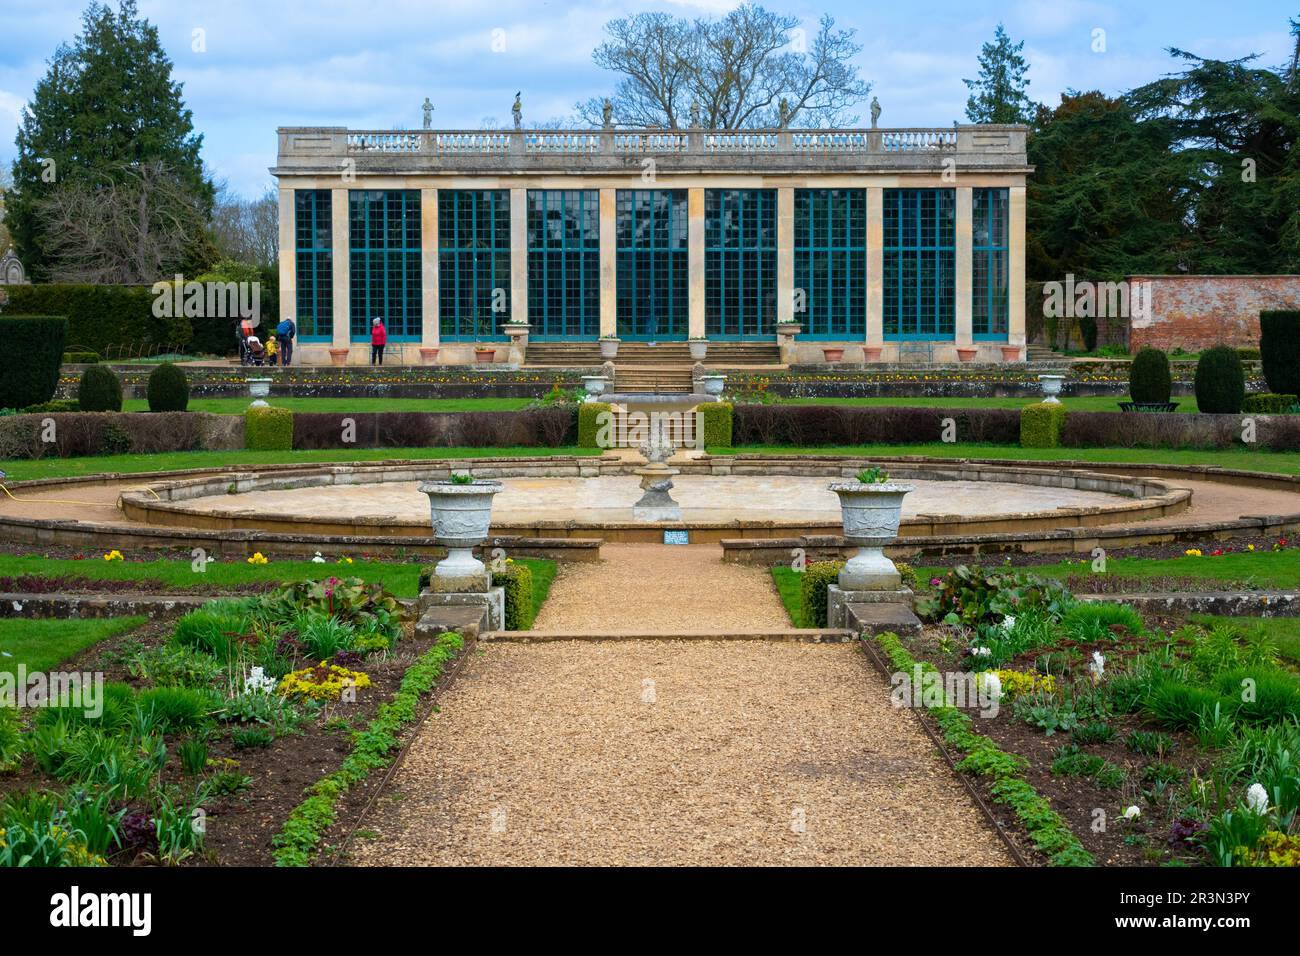 Formelle Gärten und Orangerie im Belton House ist ein denkmalgeschütztes Landhaus in der Nähe von Grantham in Lincolnshire, England Stockfoto